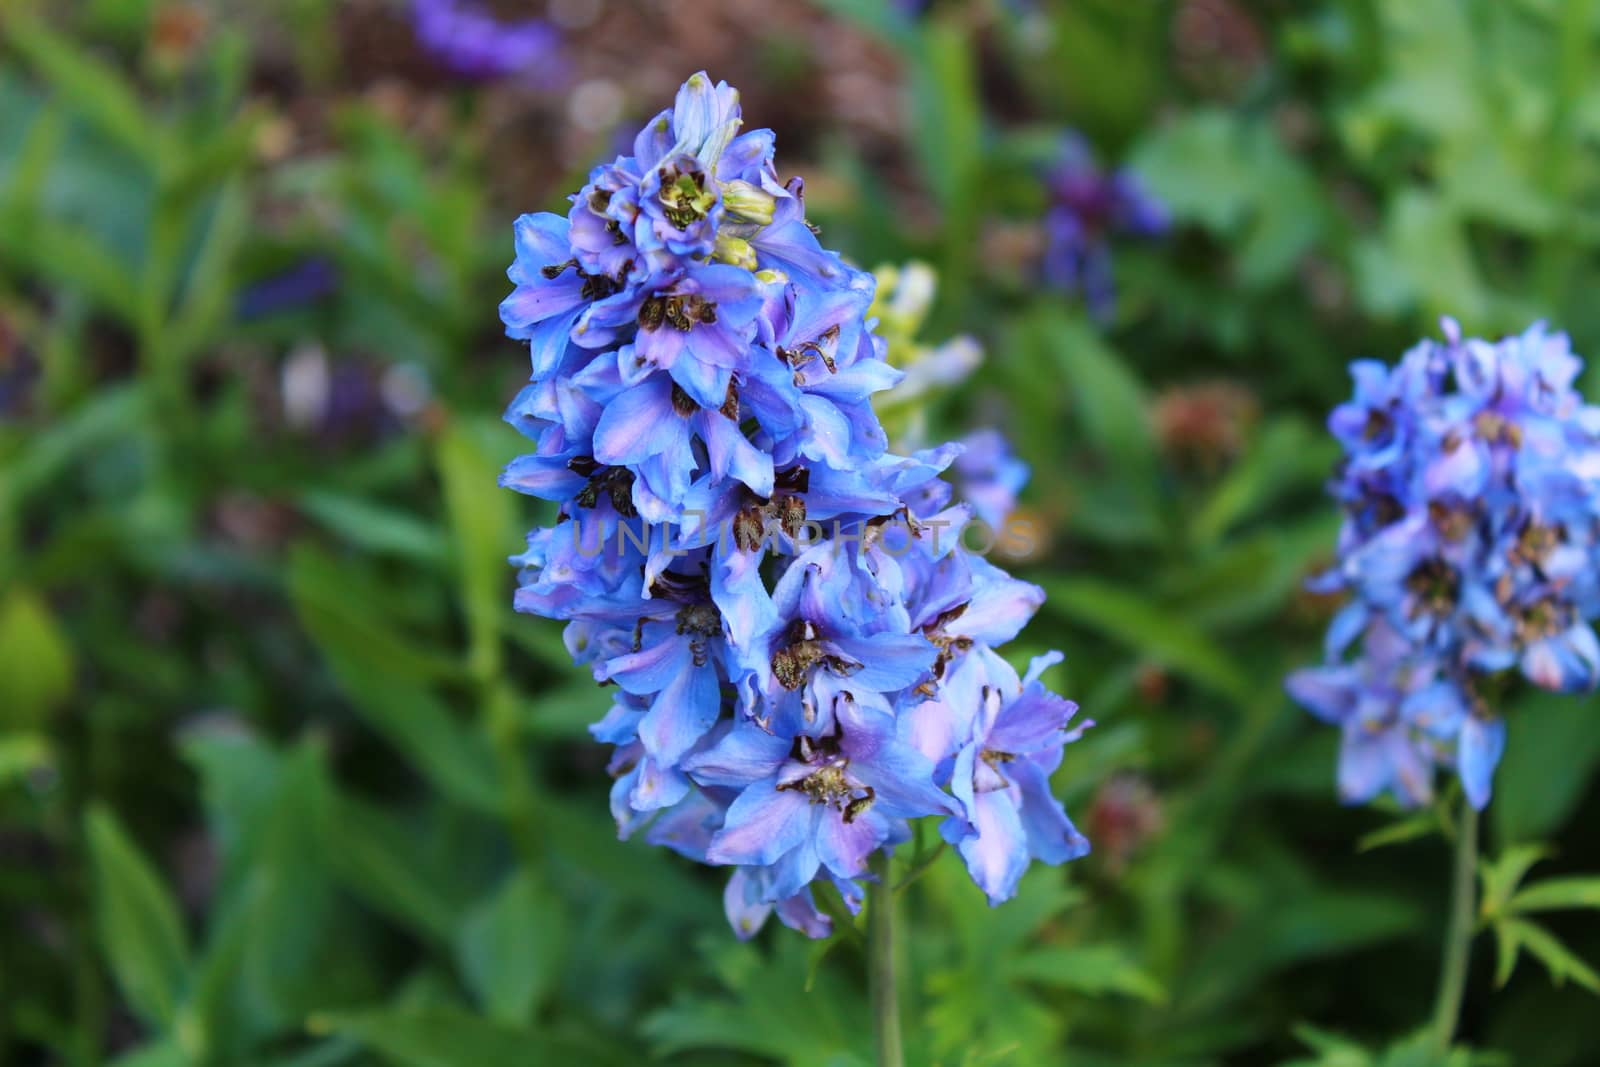 blue larkspur in the garden by martina_unbehauen